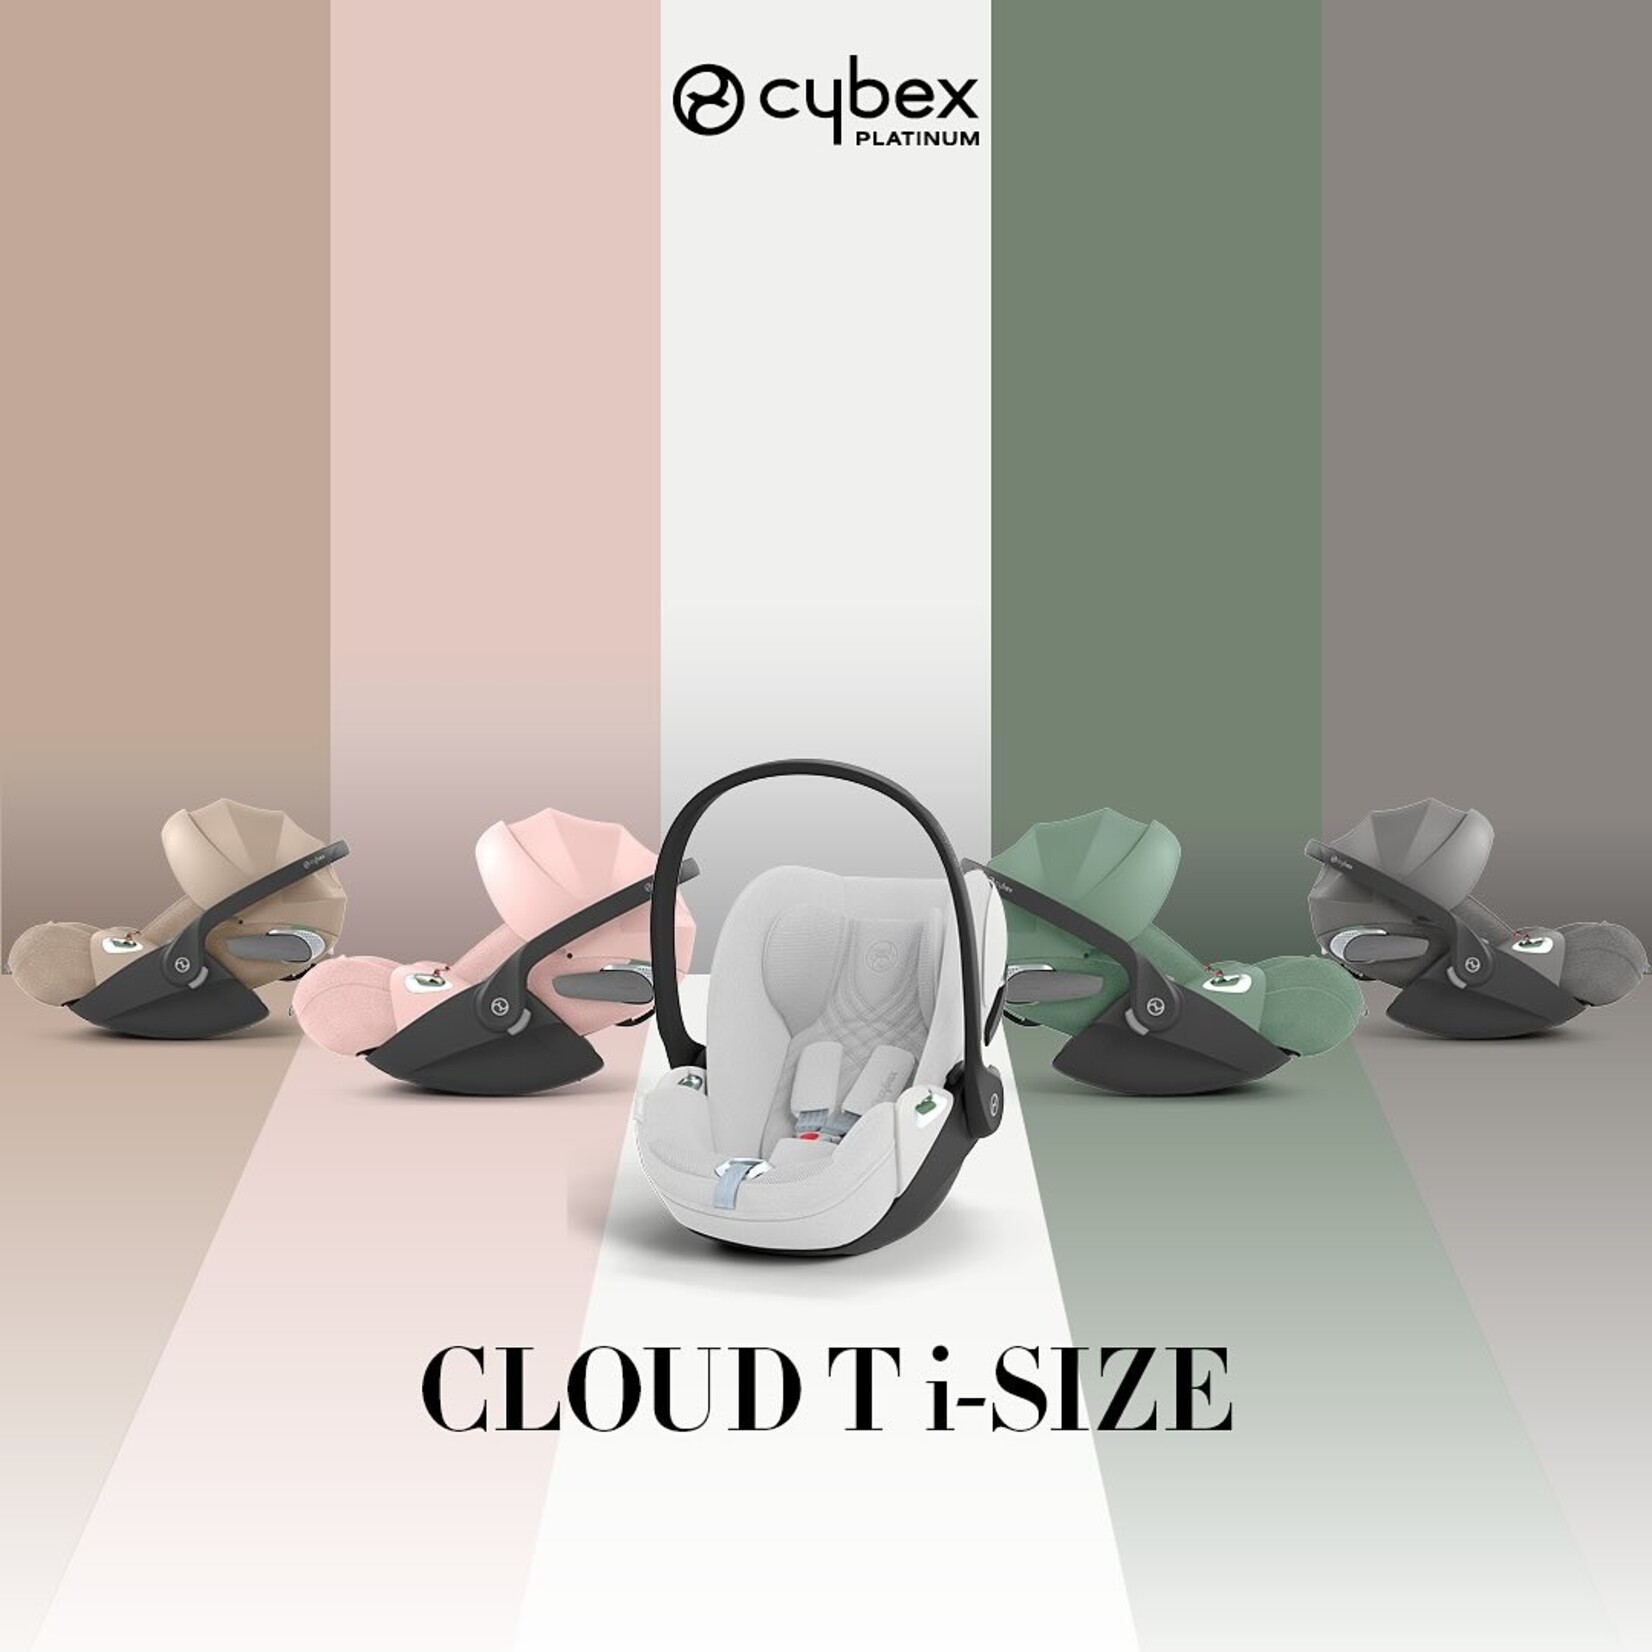 Cybex Platinum Cloud T PLUS I-Size siège bébé rotatif et inclinable tissu mesh